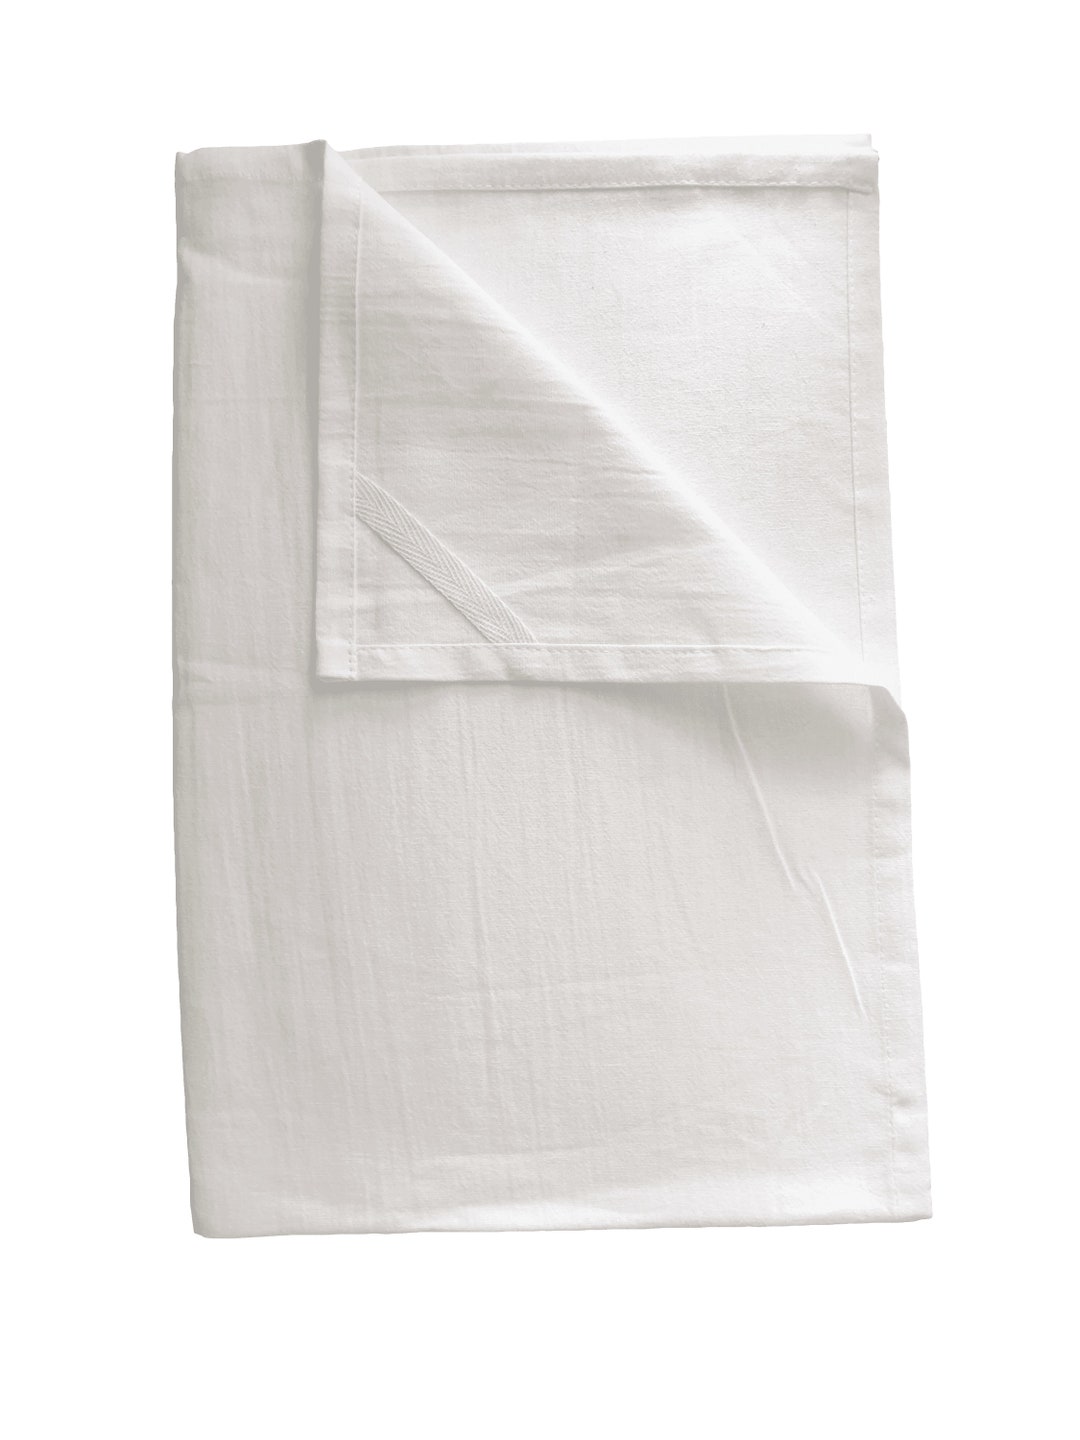 Home Kitchen Linen Cotton Tea Towel Wholesale Bulk Dish Towel Plain Tea  Towel - China Tea Towel and Kitchen Towel price